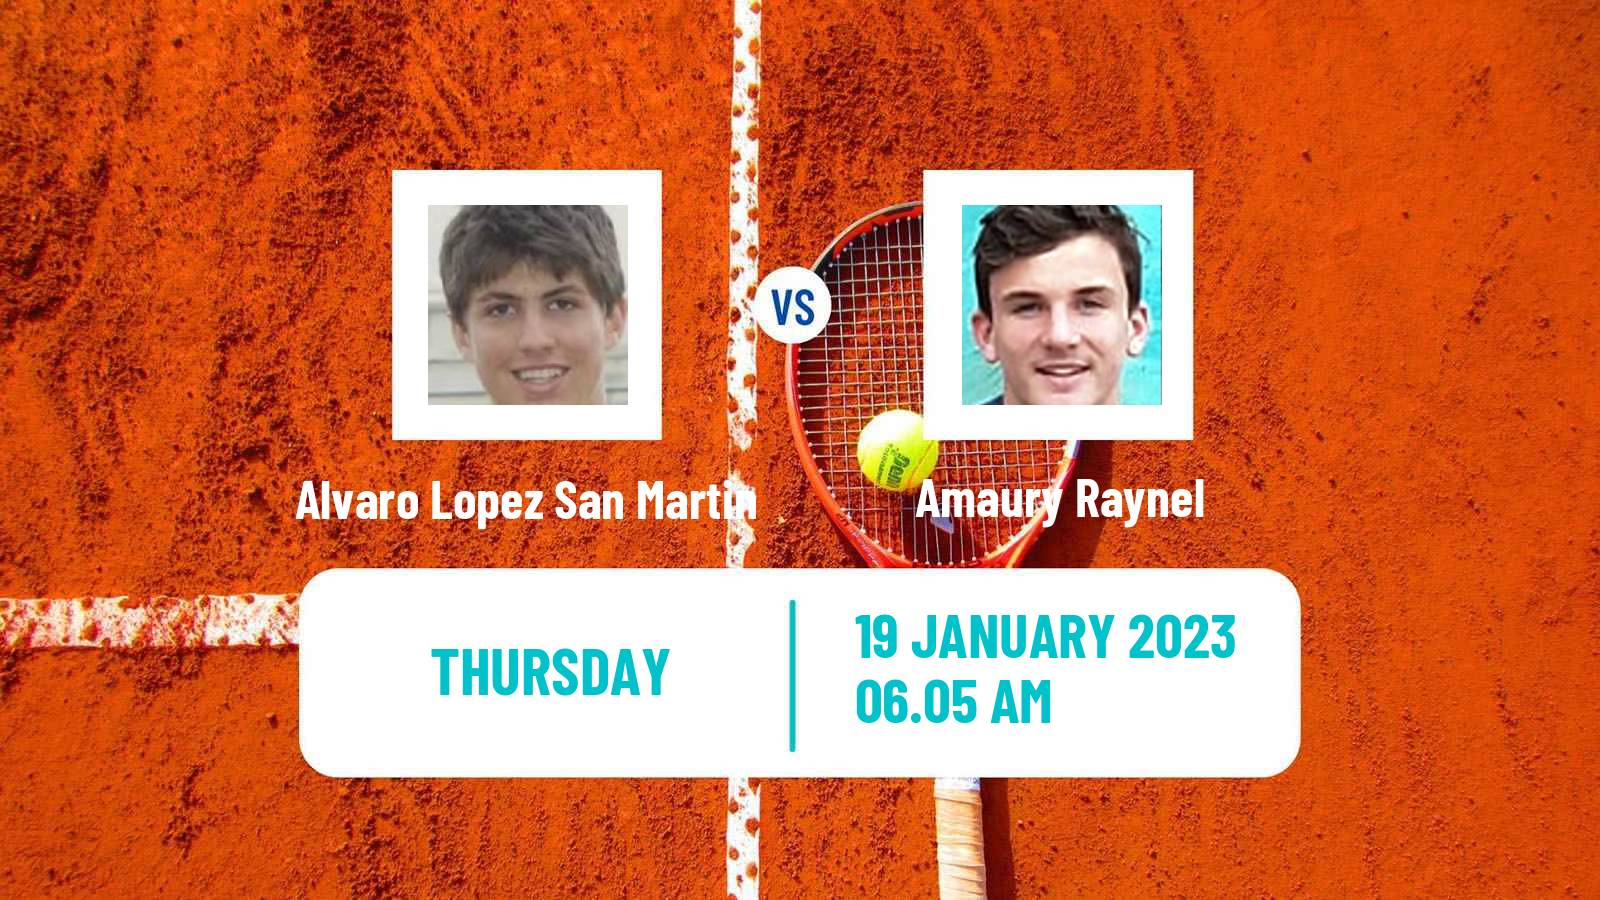 Tennis ITF Tournaments Alvaro Lopez San Martin - Amaury Raynel